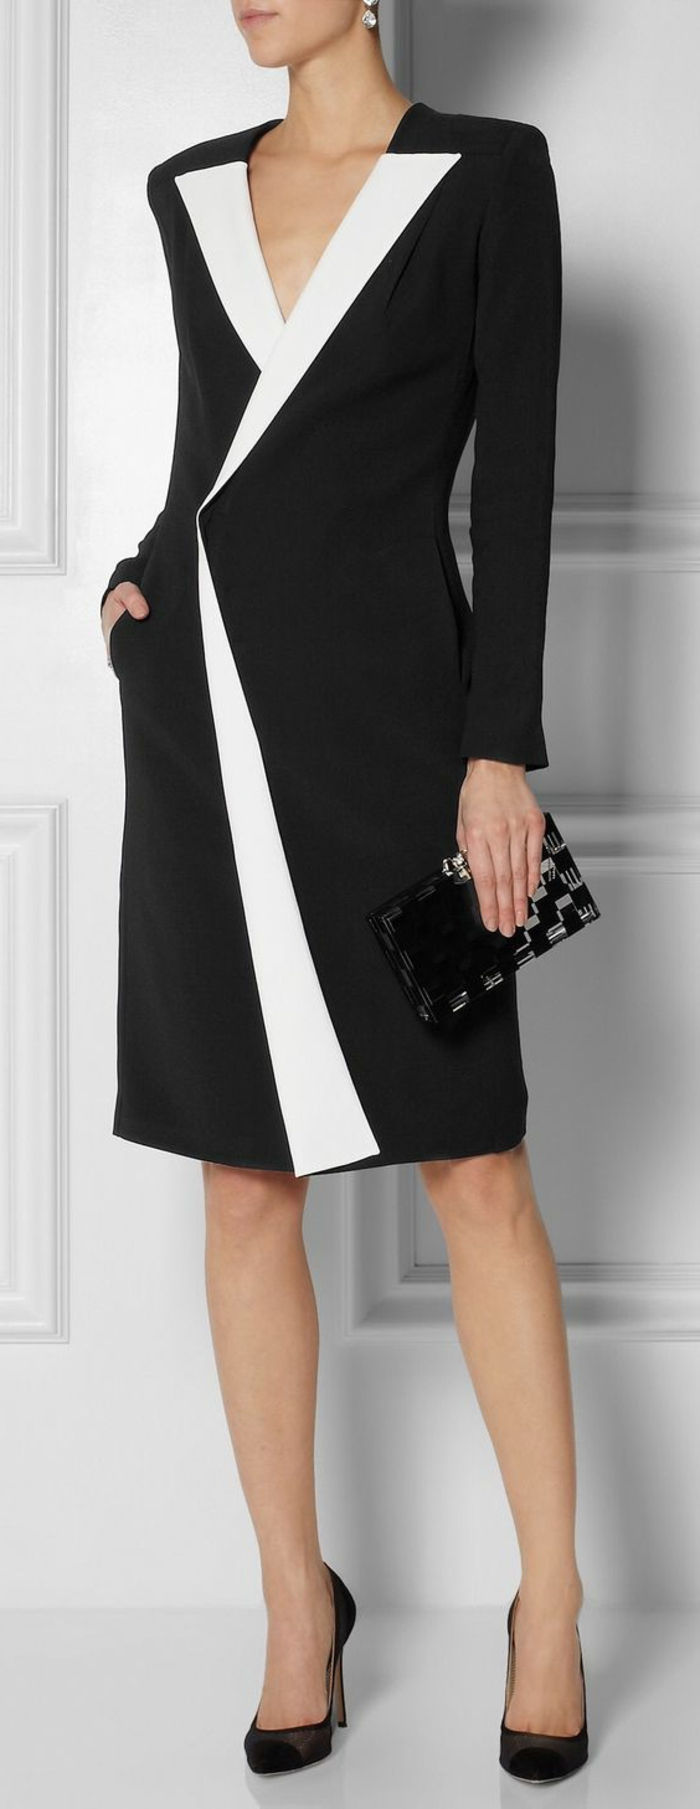 knäpplängds svart klänning med en enkel design, med långa raka ärmar, vit krage och en v-ring från Valentino mode kollektion, svart cocktailväska utan handtag, mockahängen i två färger, örhängen i designkristall